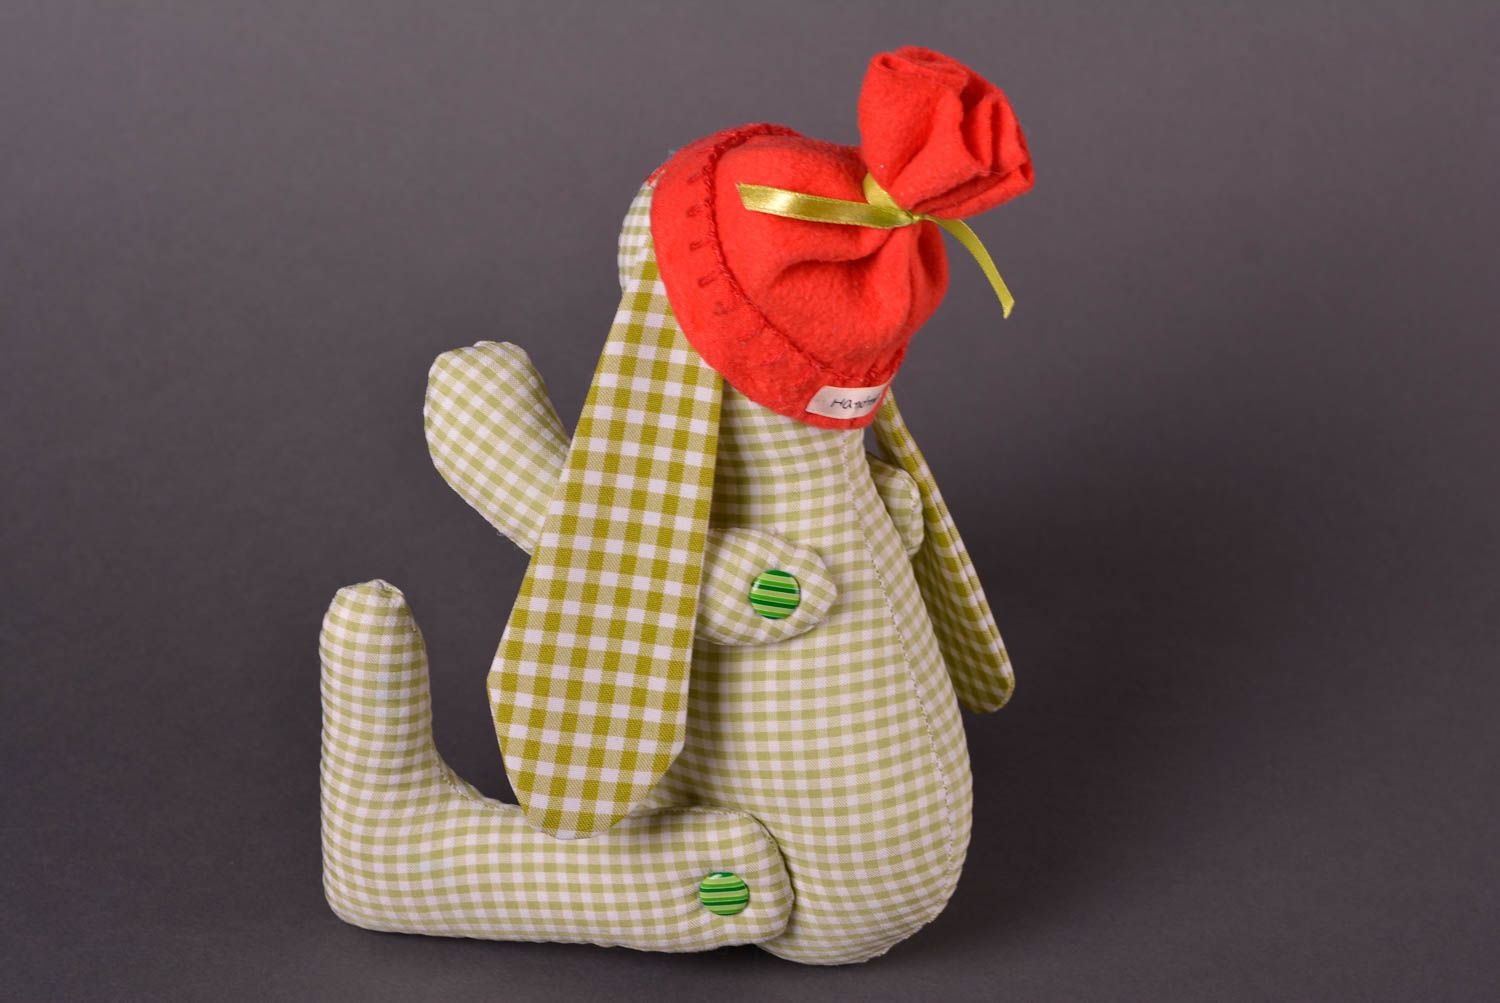 Авторская игрушка ручной работы игрушка заяц из ткани стильный подарок фото 3